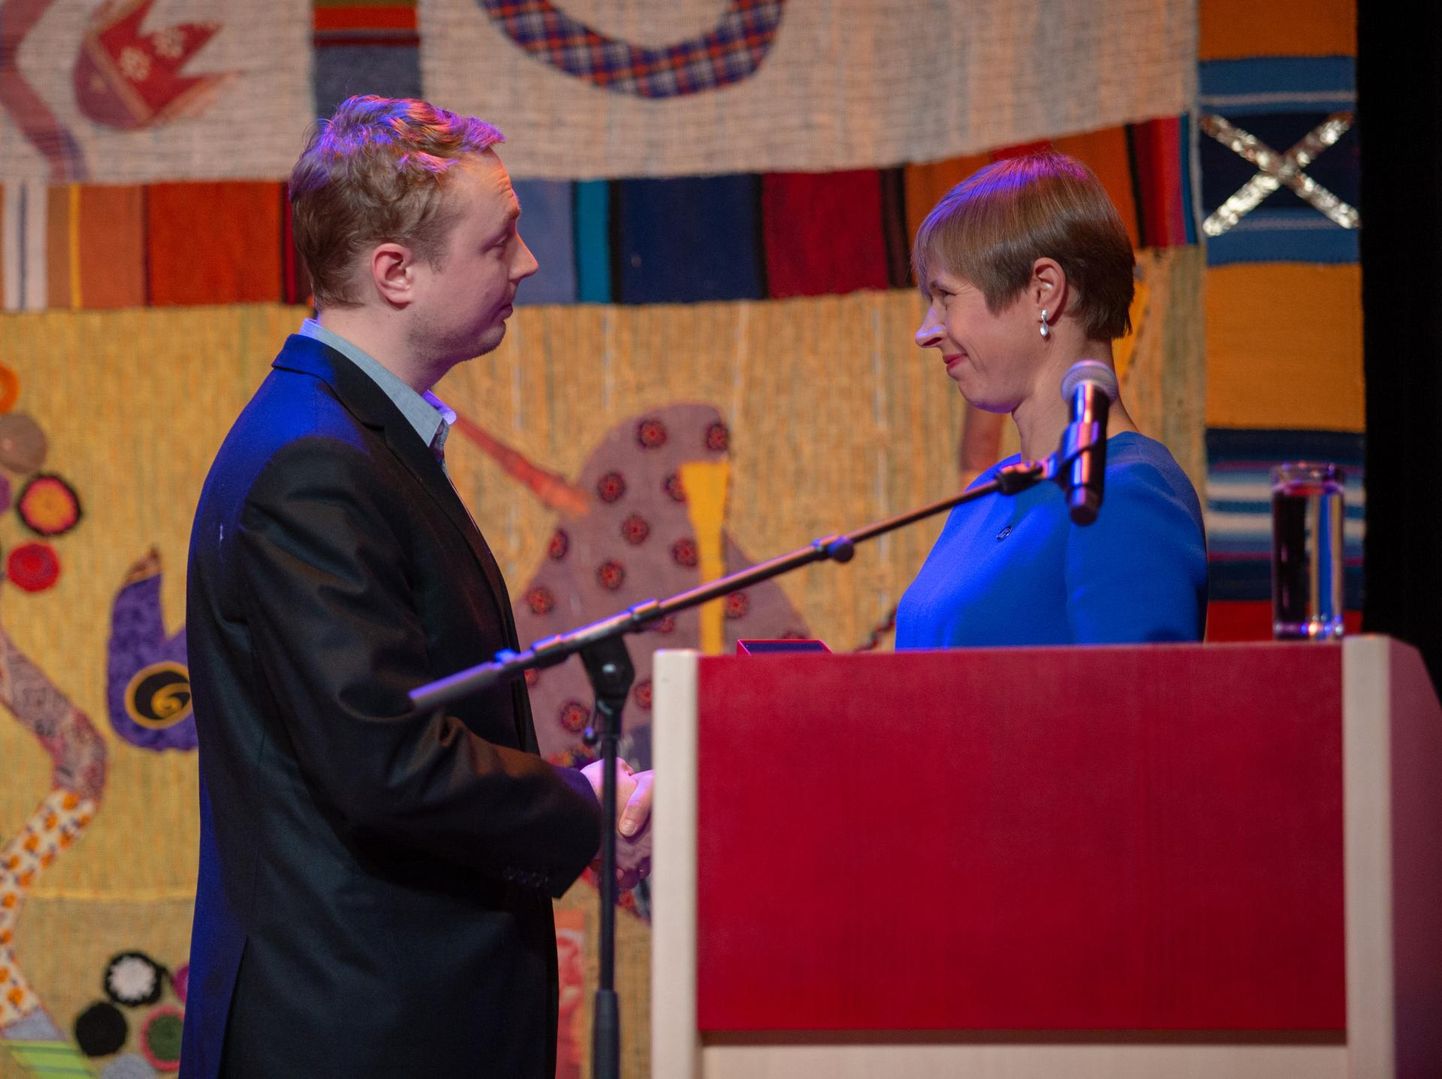 Esimese vabariigi pillimehe tiitli andis Juhan Uppinile vabariigi president Kersti Kaljulaid 2018. aastal.
 